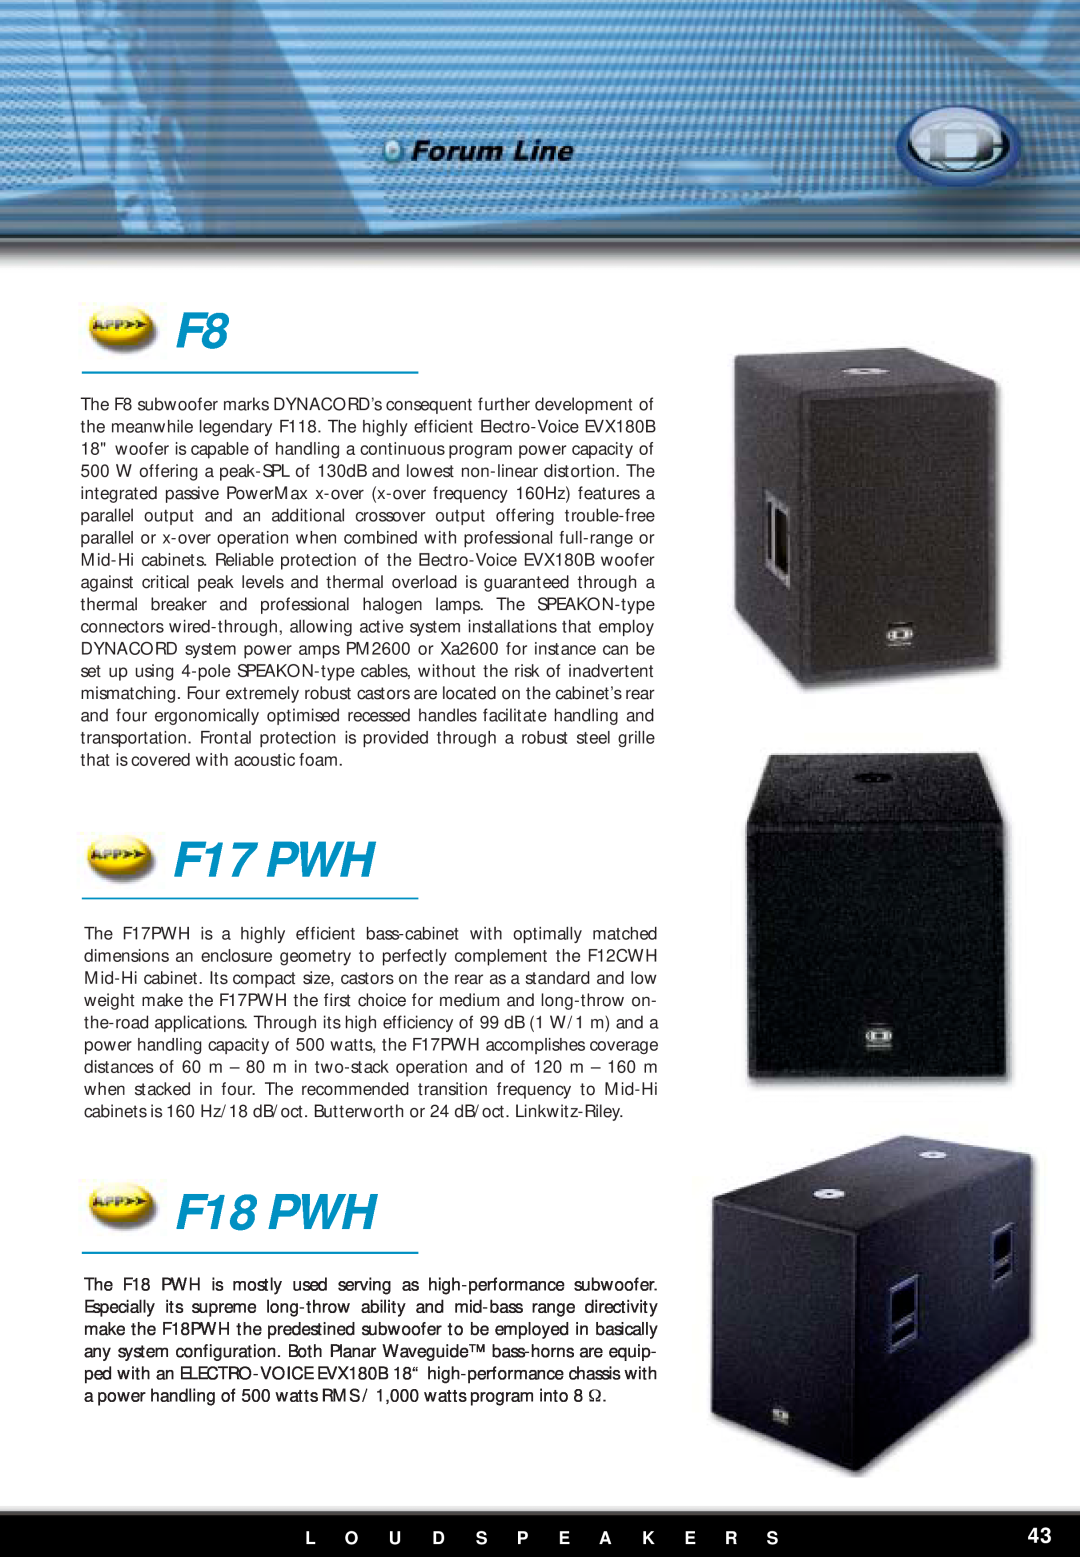 Dynacord F12 manual F17 PWH, F18 PWH, L O U D S P E A K E R S 